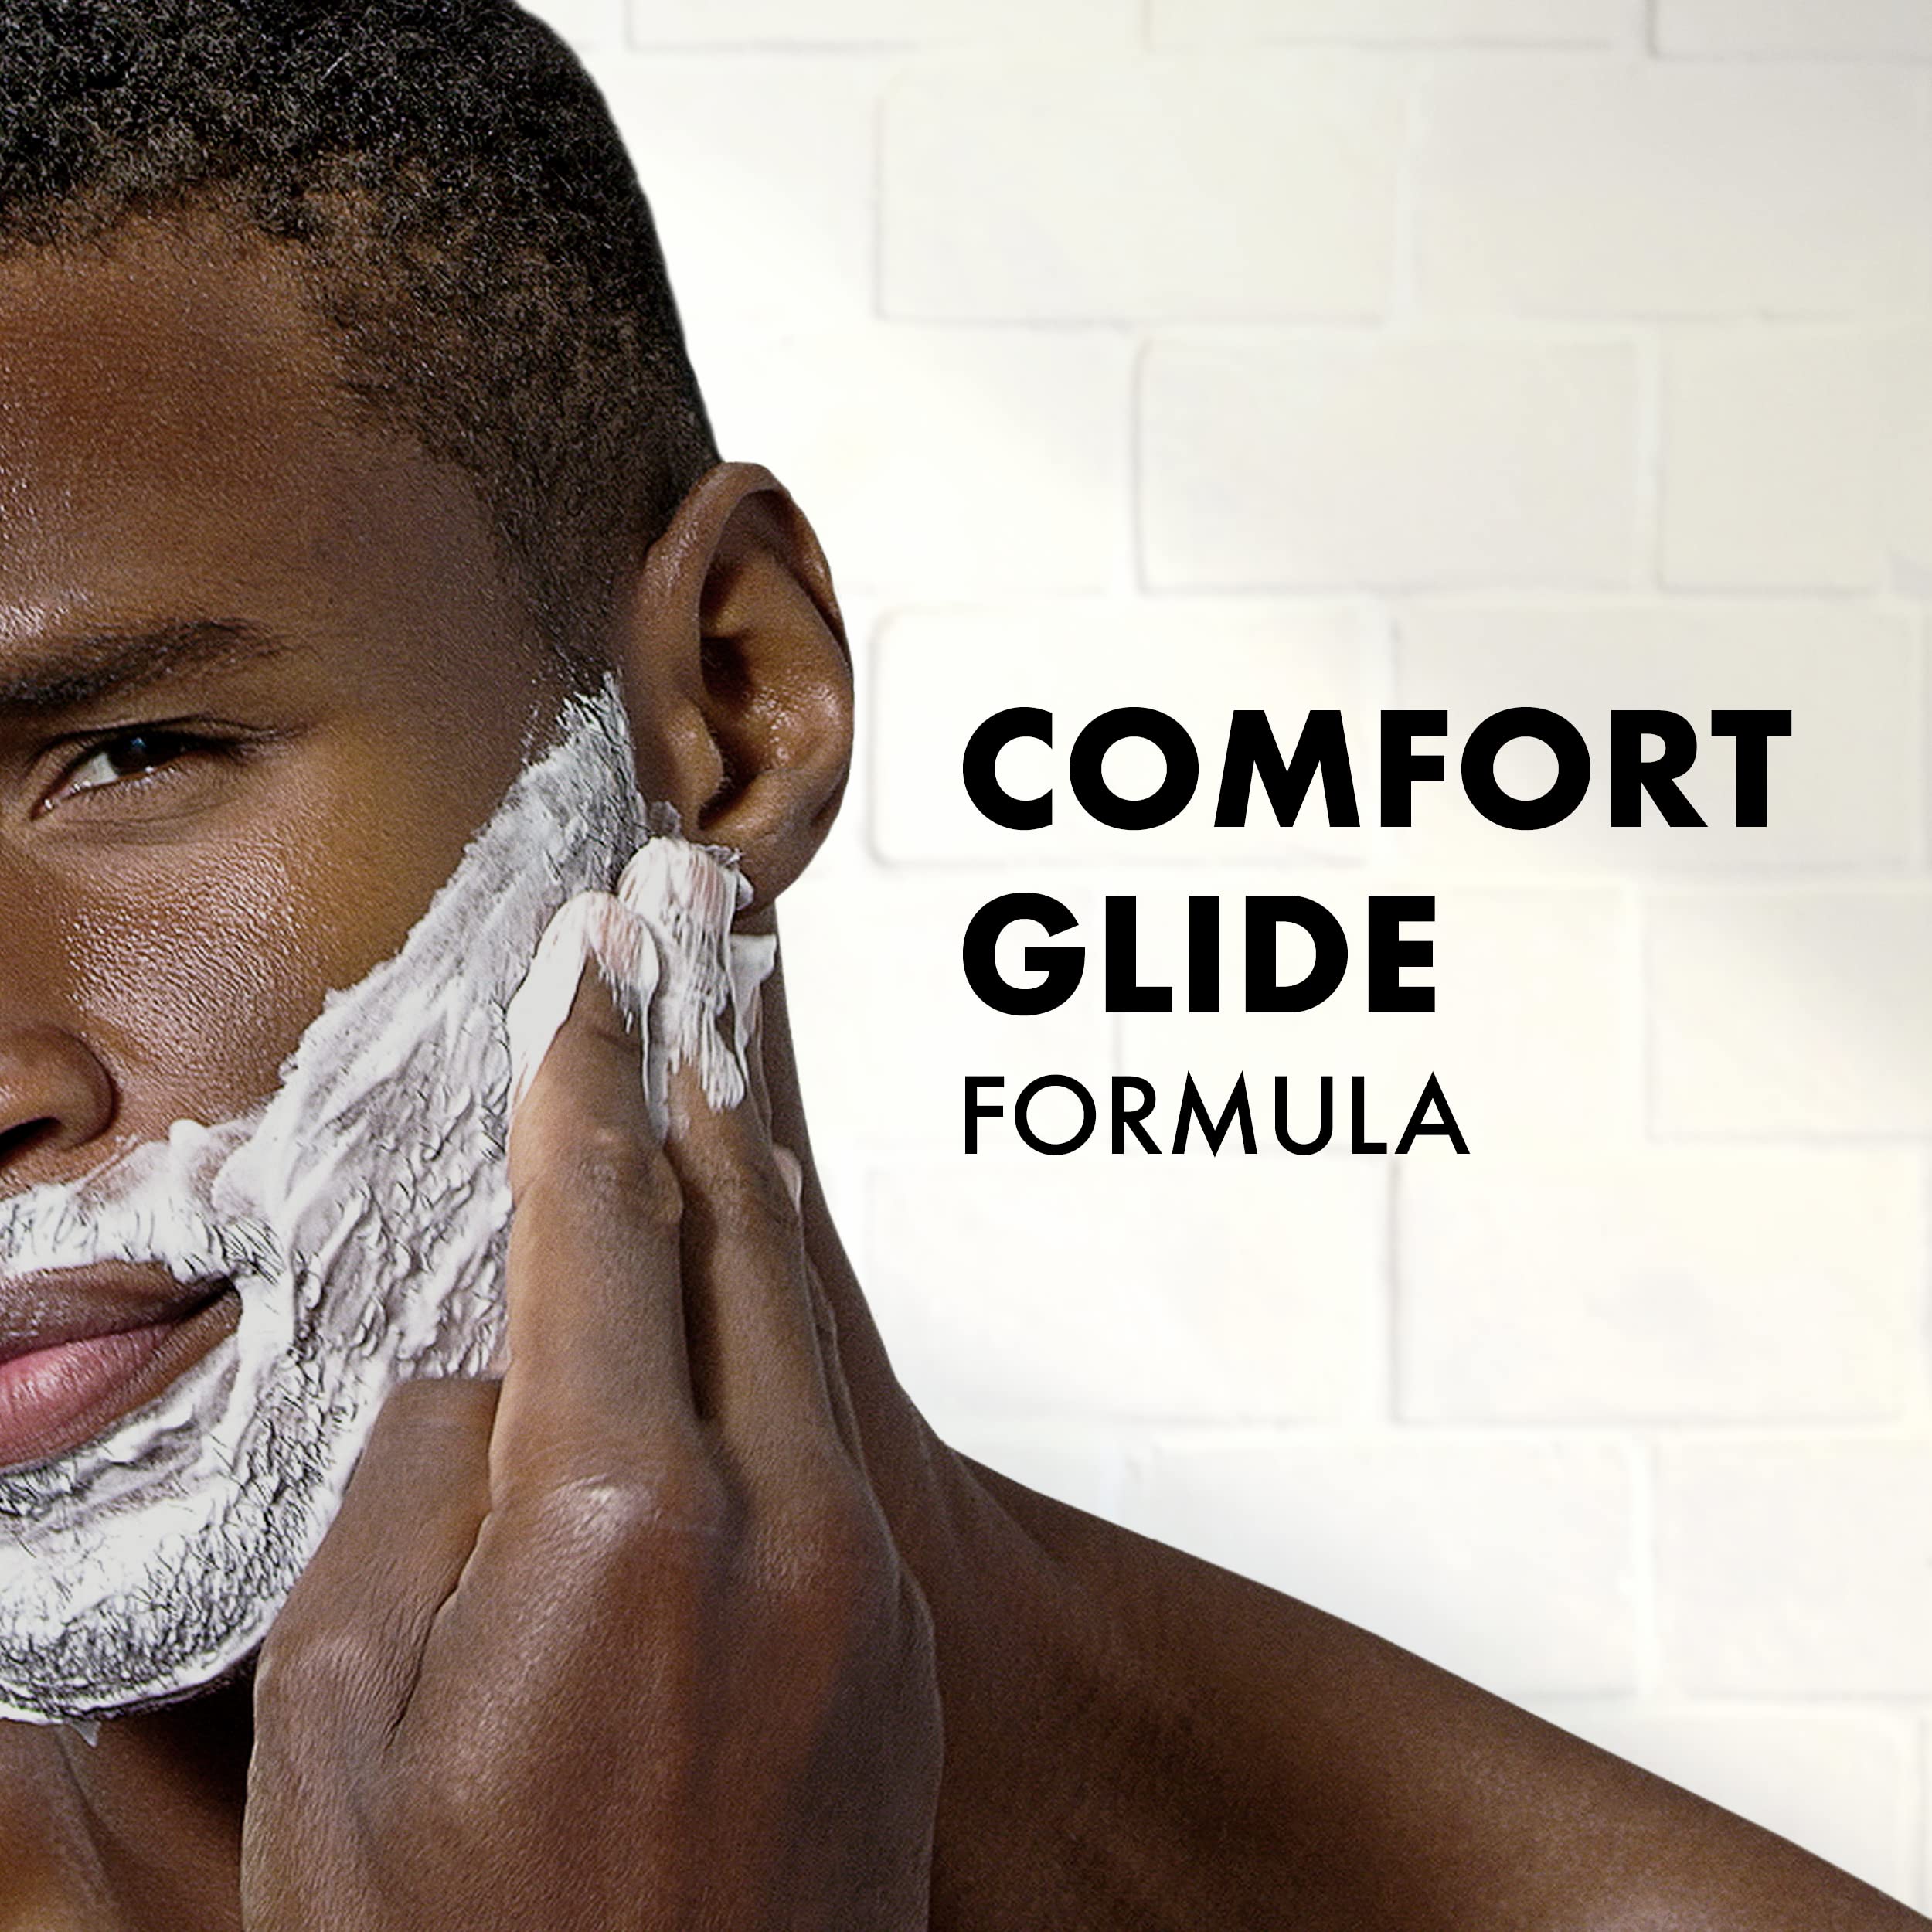 Gillette Foamy Regular Shaving Cream, 11 Ounce (Pack of 12)